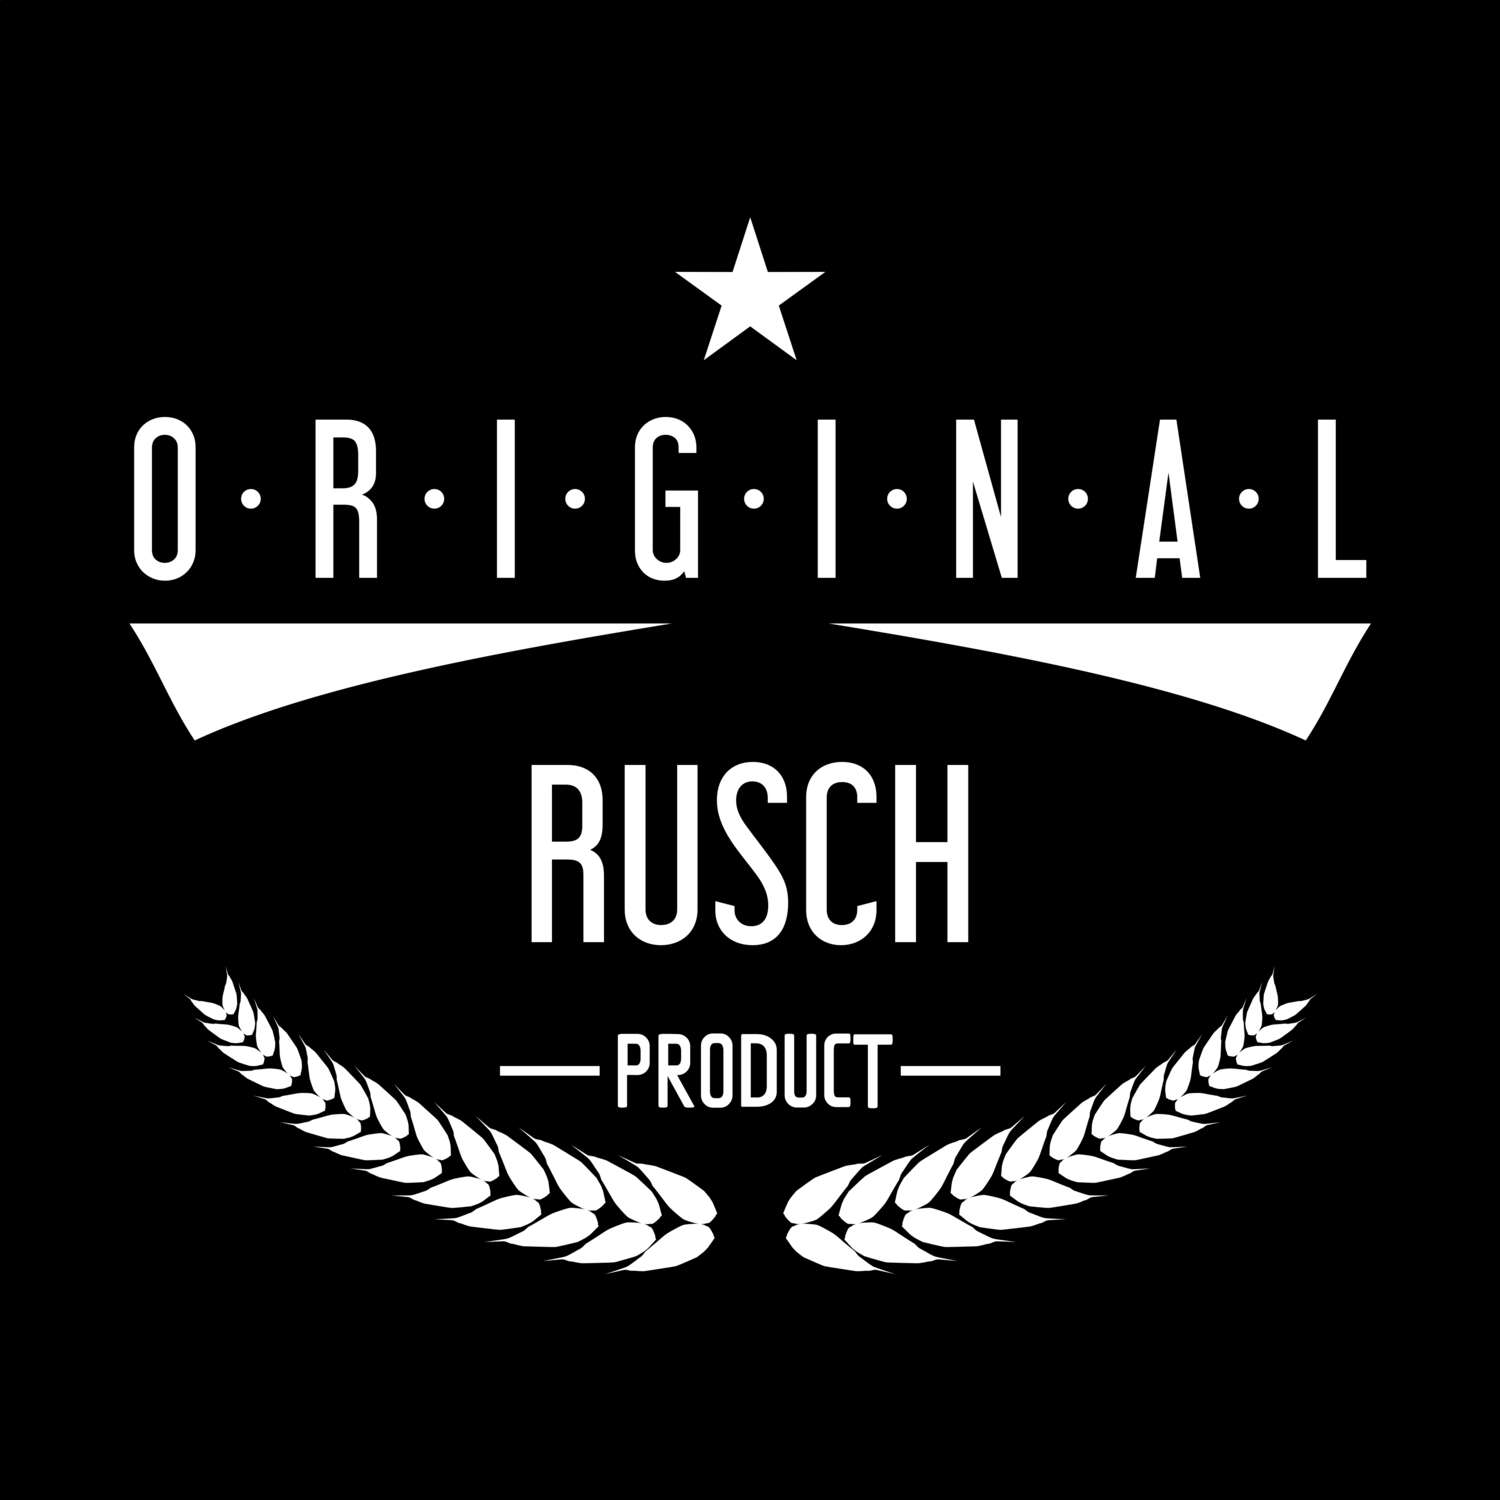 Rusch T-Shirt »Original Product«